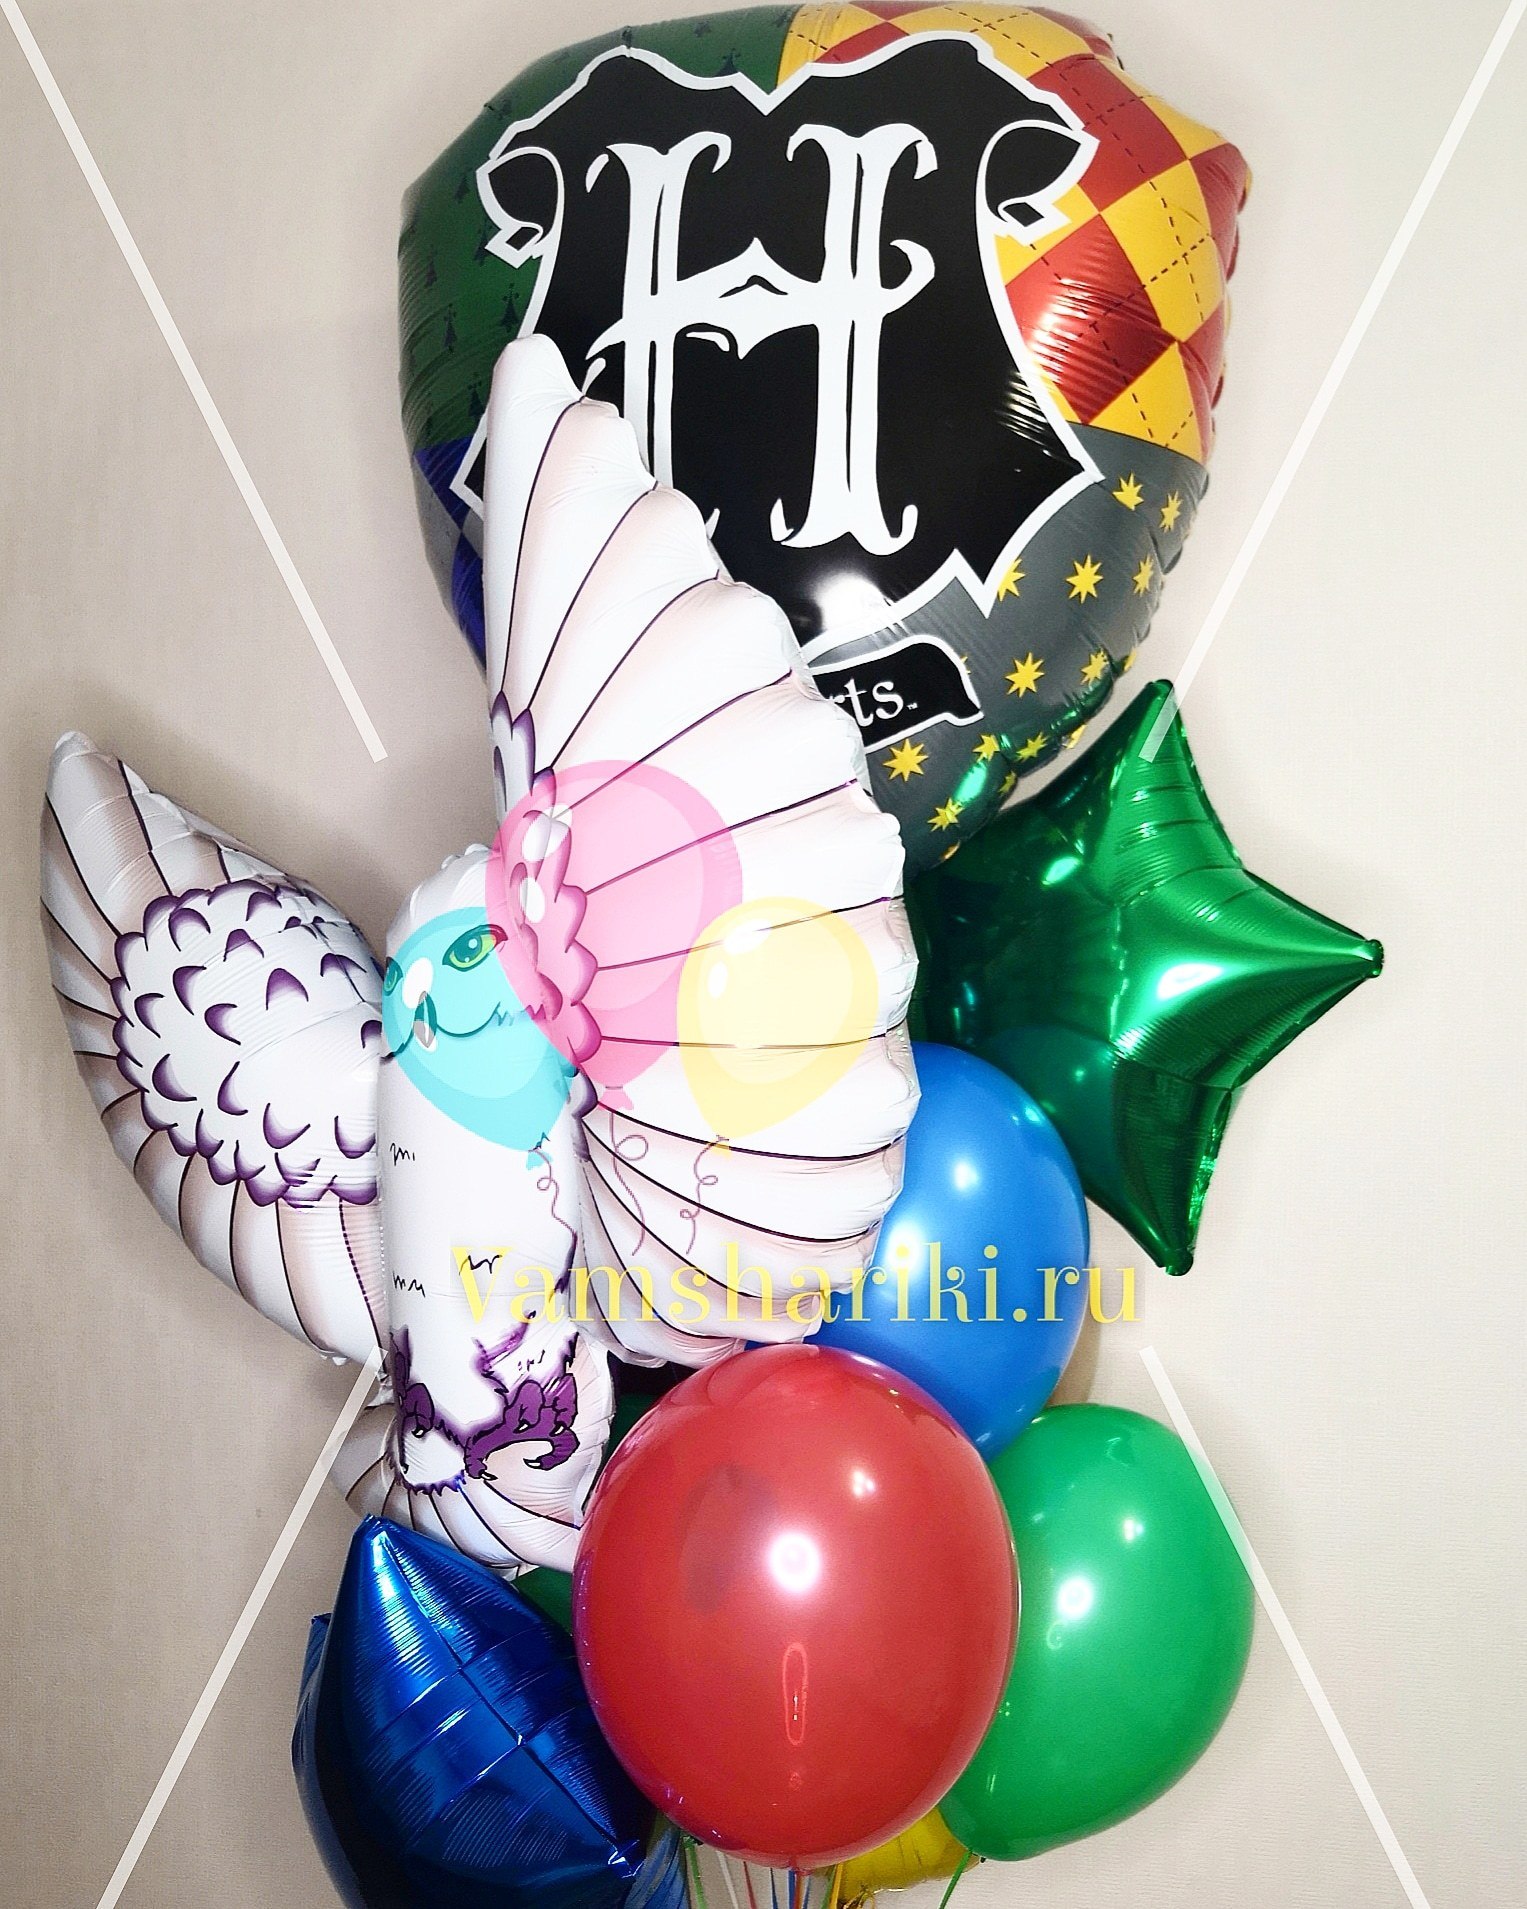 Декоративная фигура совы, сделанная из шара, придаст шарм вашему дому или офису